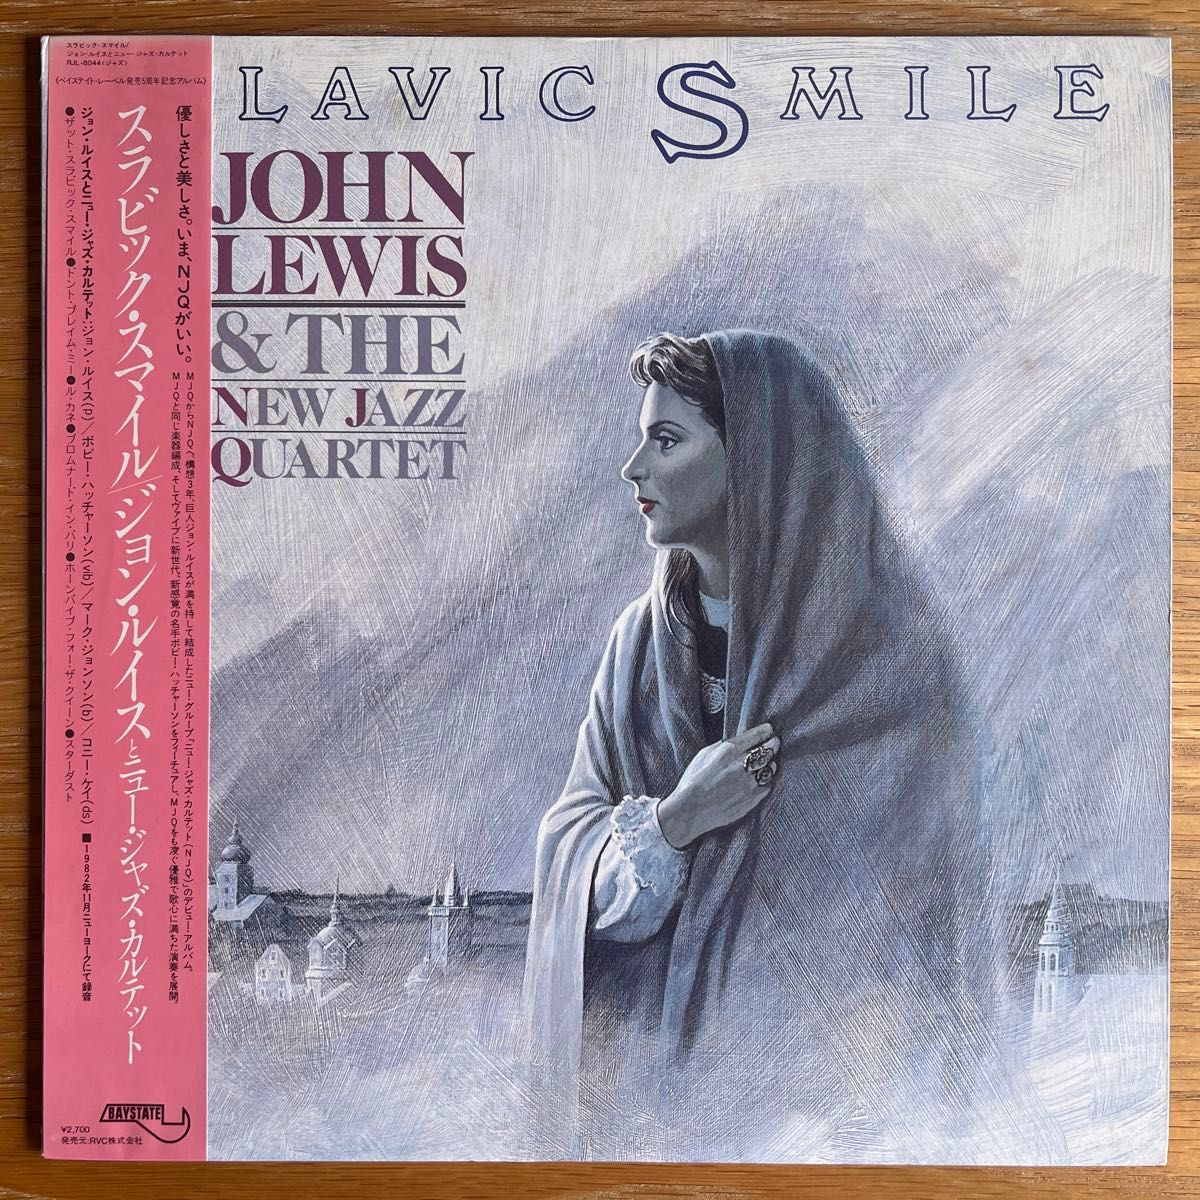 国内企画 JOHN LEWIS & THE NEW JAZZ QUARTET Slavic Smile 国内オリジナル盤 LP